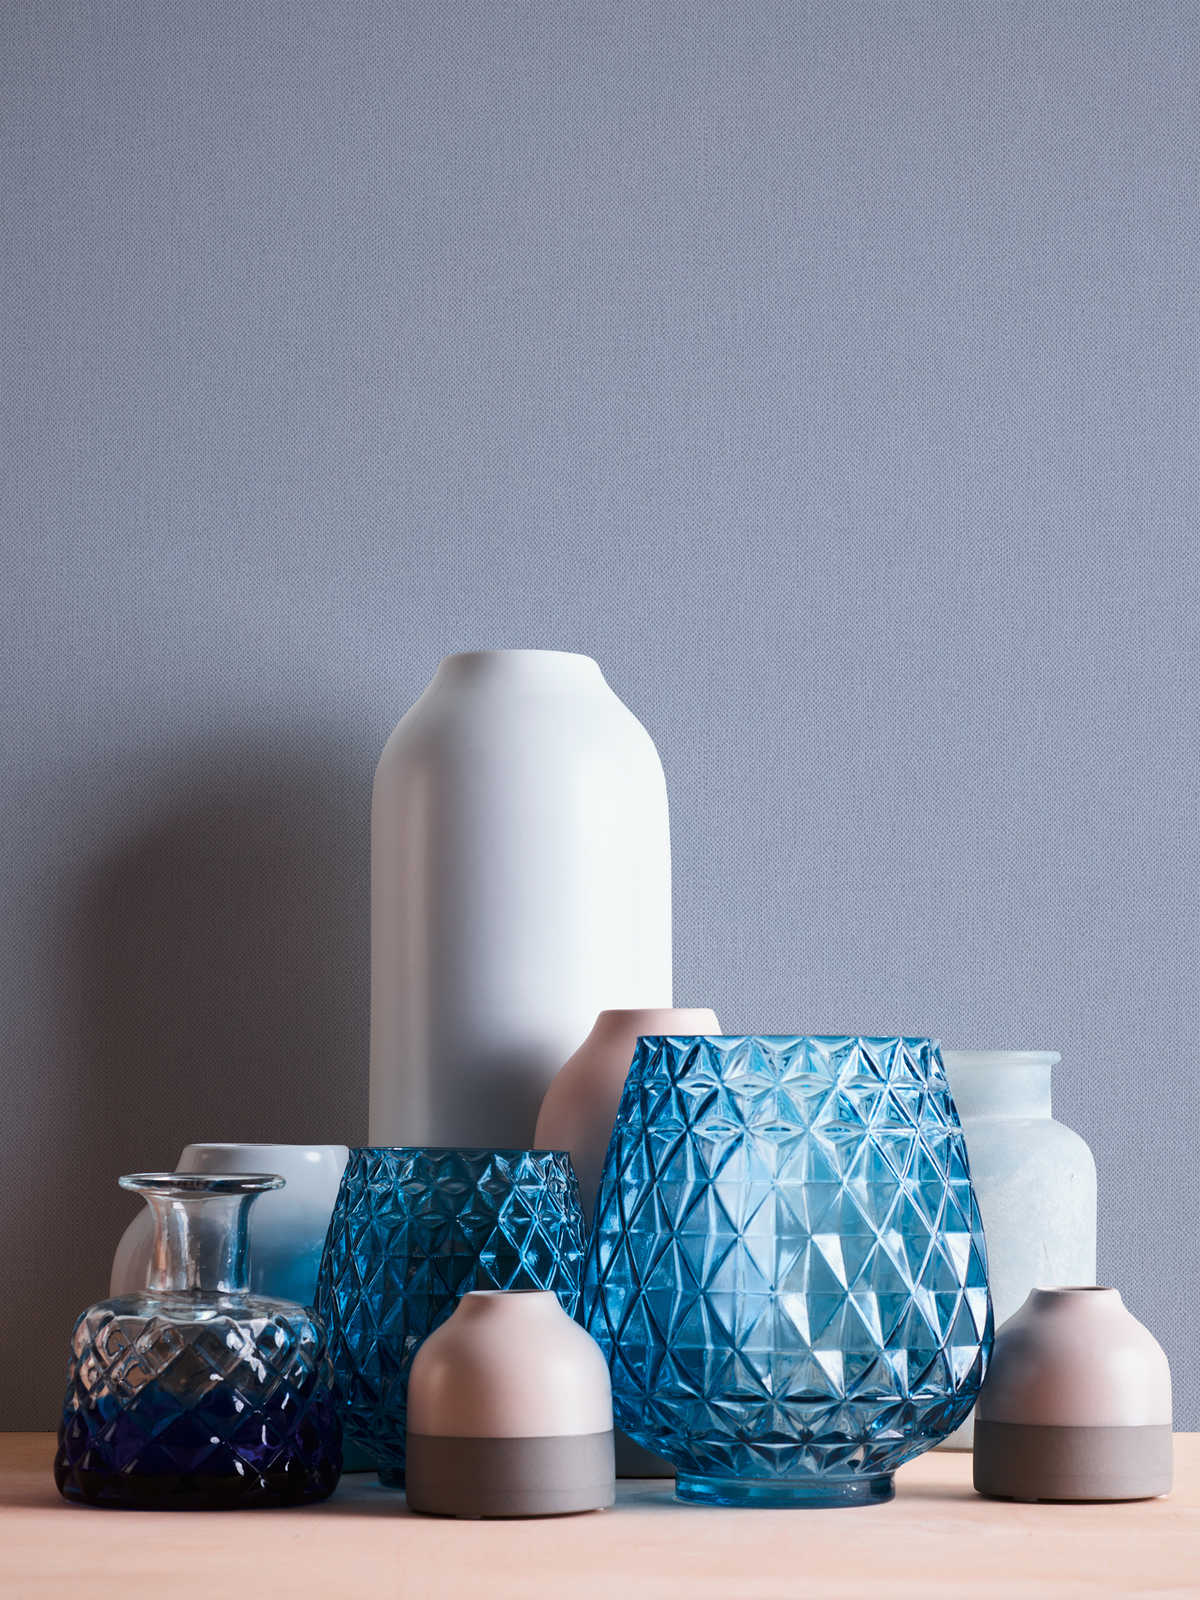             Tapete Blau Grau mit Textilstruktur im Landhaus Stil – Blau
        